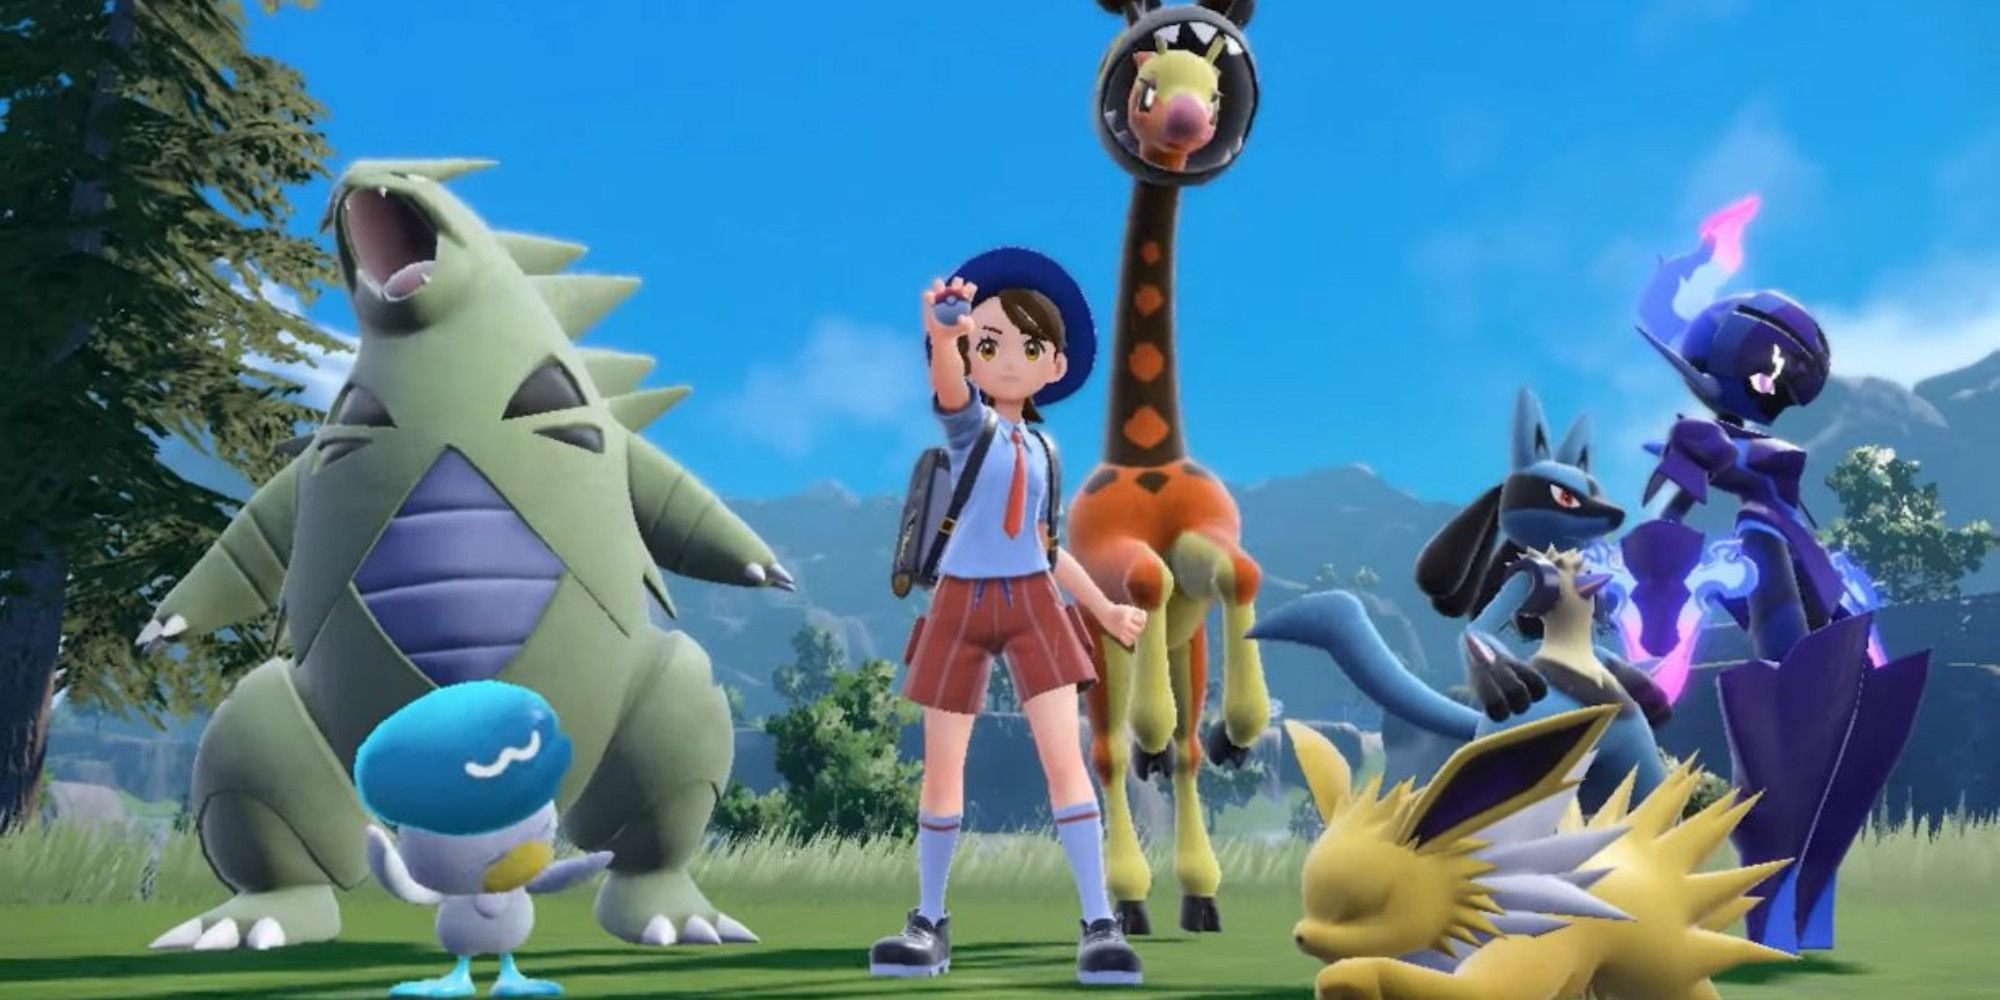 Joueur de Pokémon Scarlet and Violet entouré d'une équipe de Pokémon.